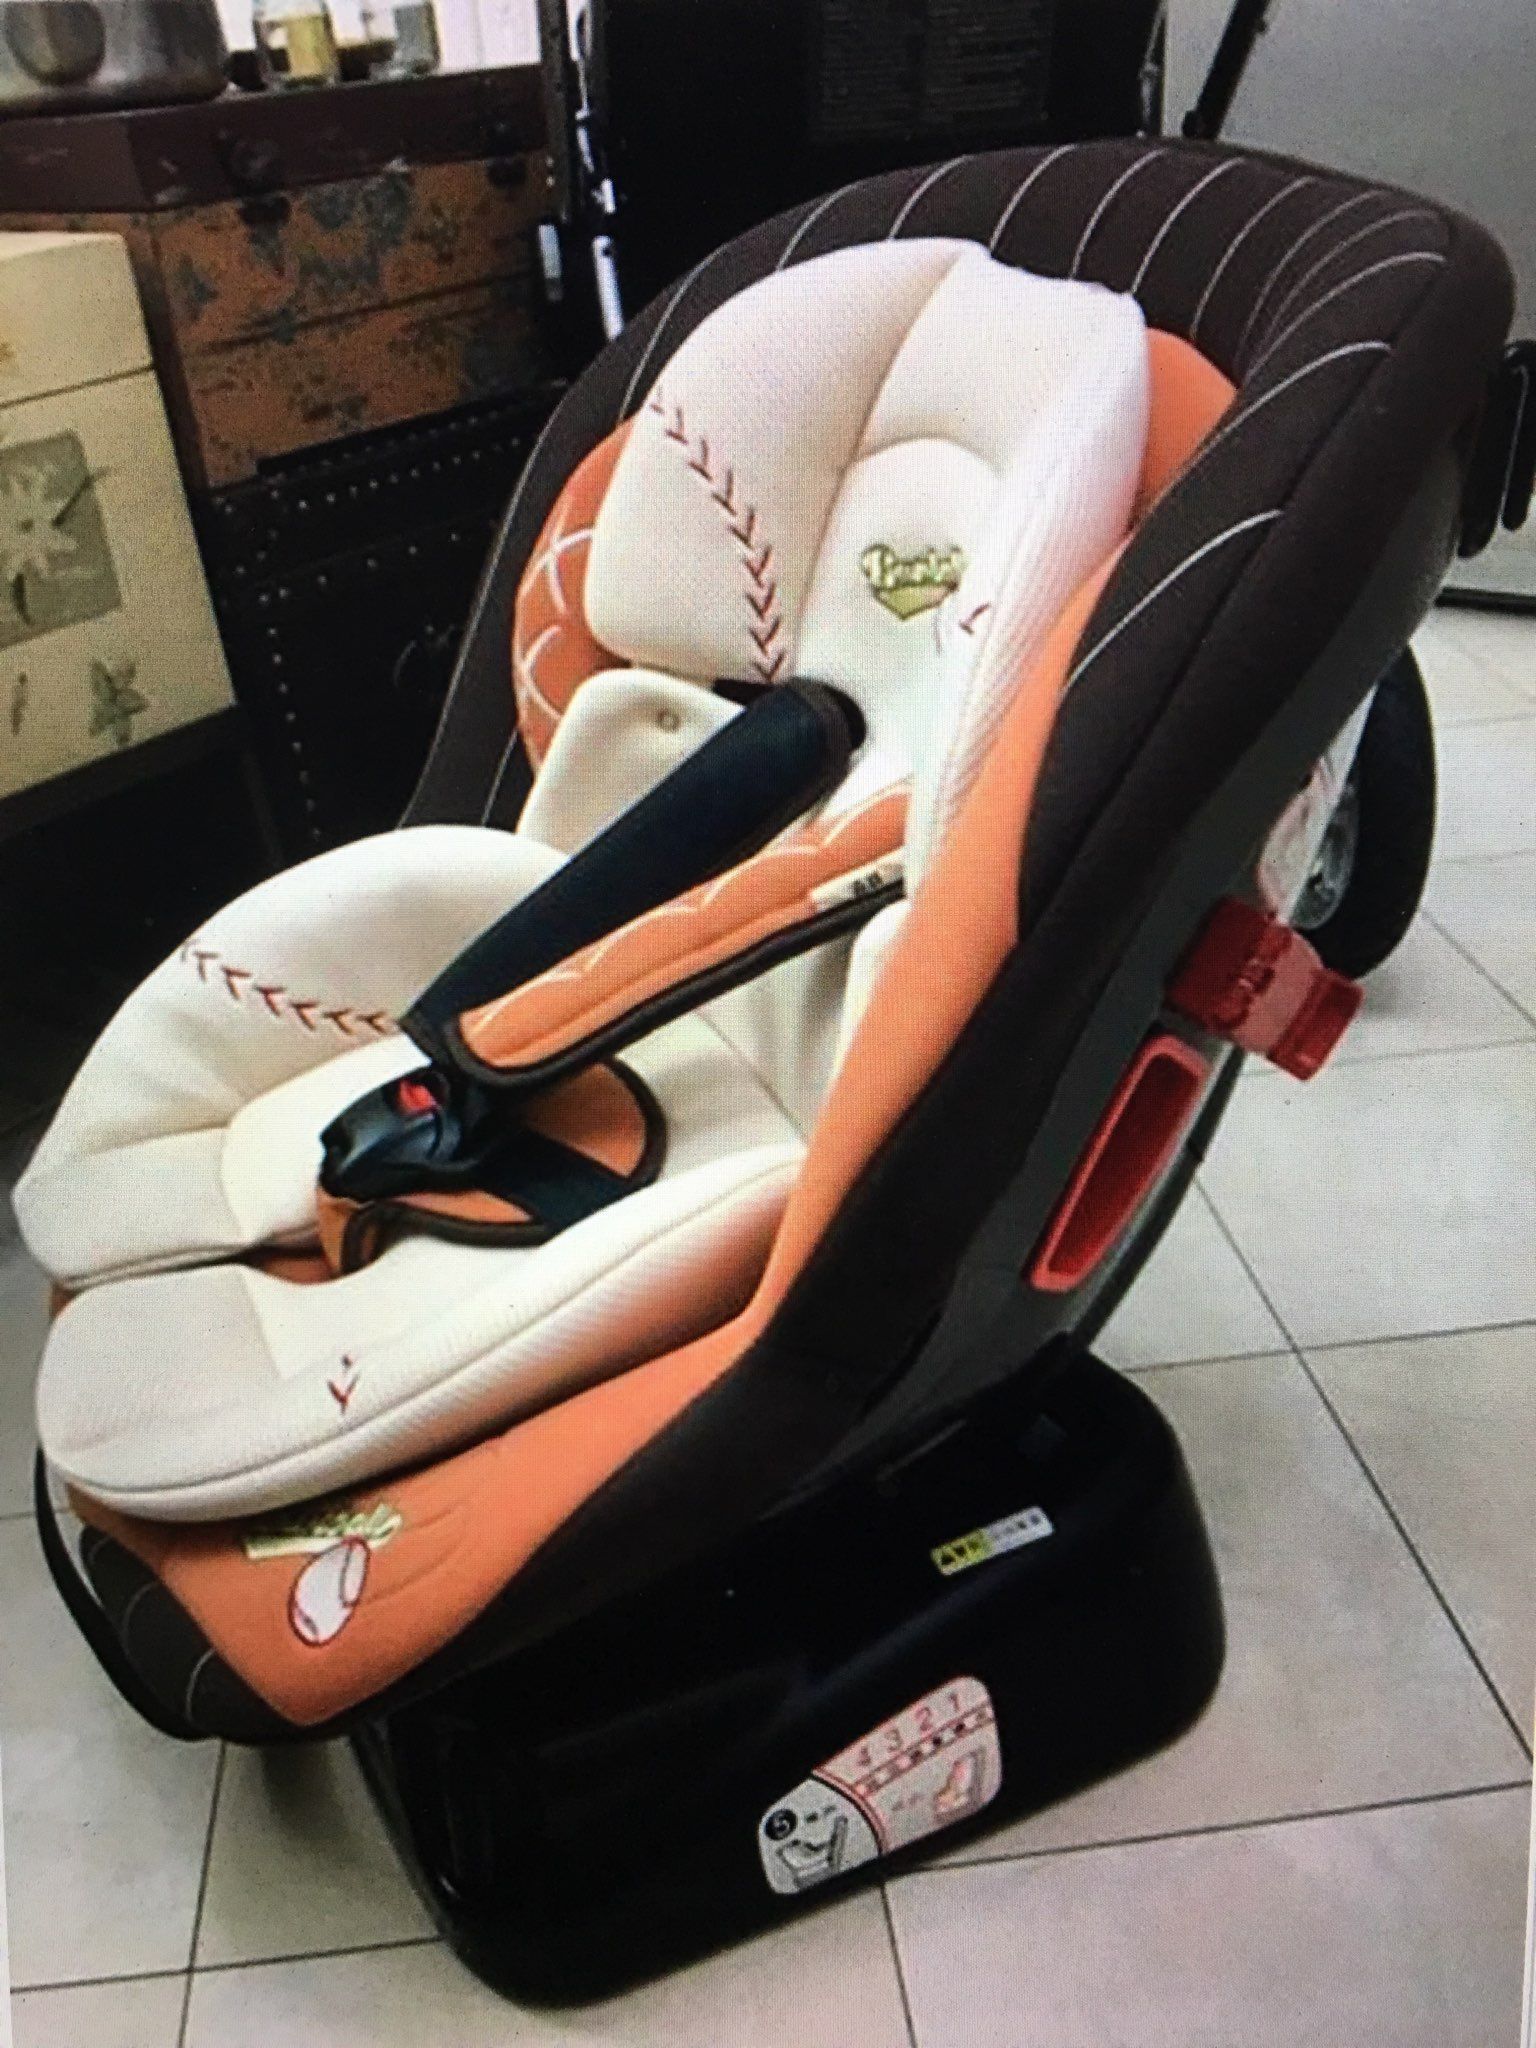 奇哥棒球嬰幼兒安全座椅